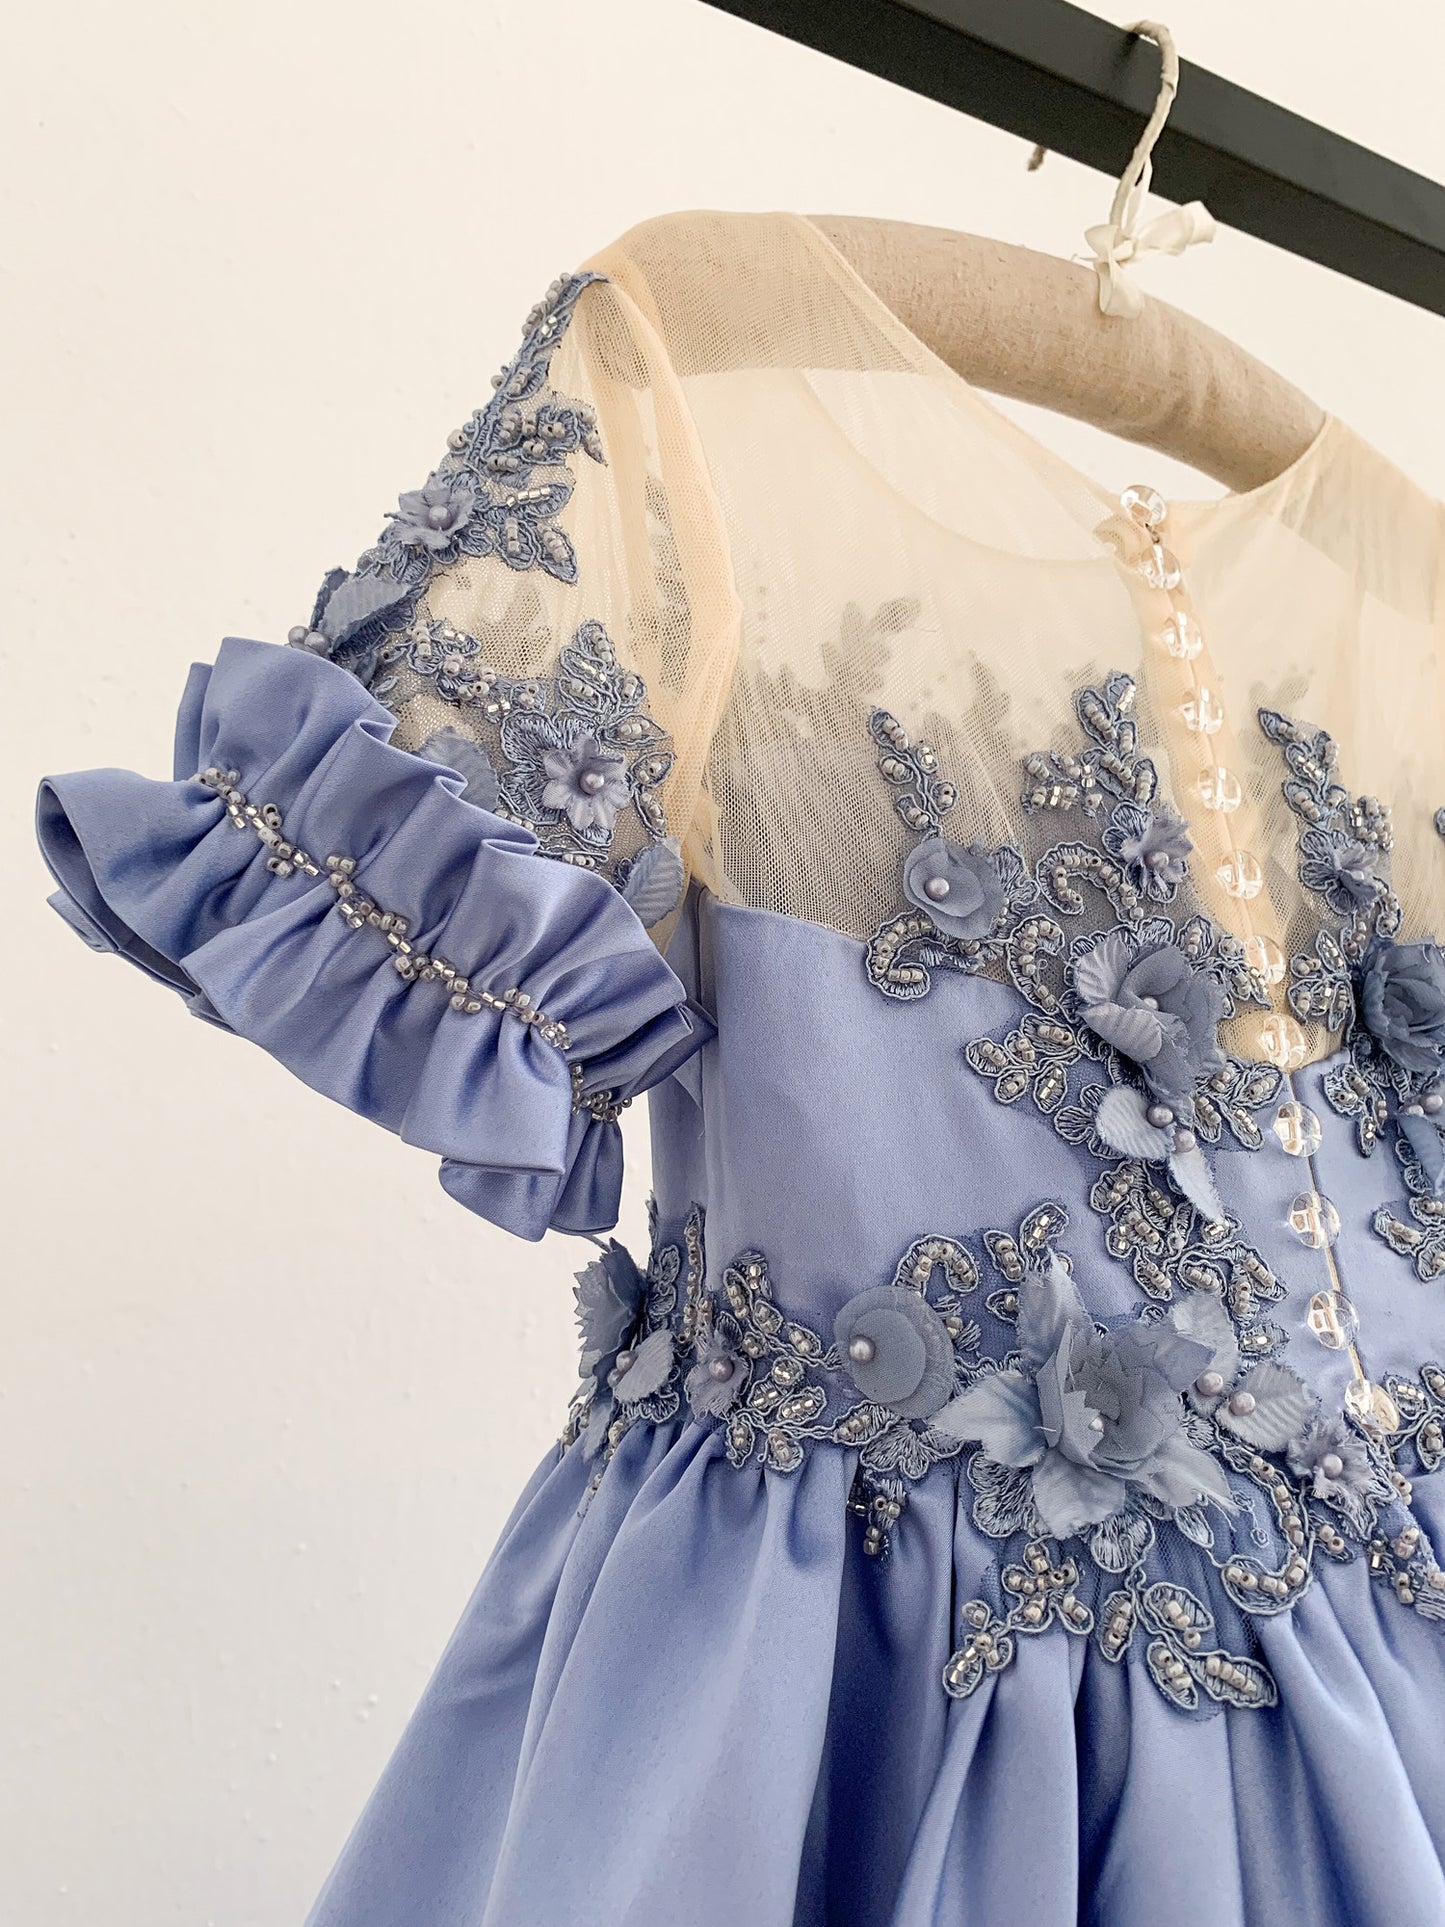 Short Sleeves Sheer Neck Light Blue Satin Wedding Flower Girl Dress, Beaded Lace